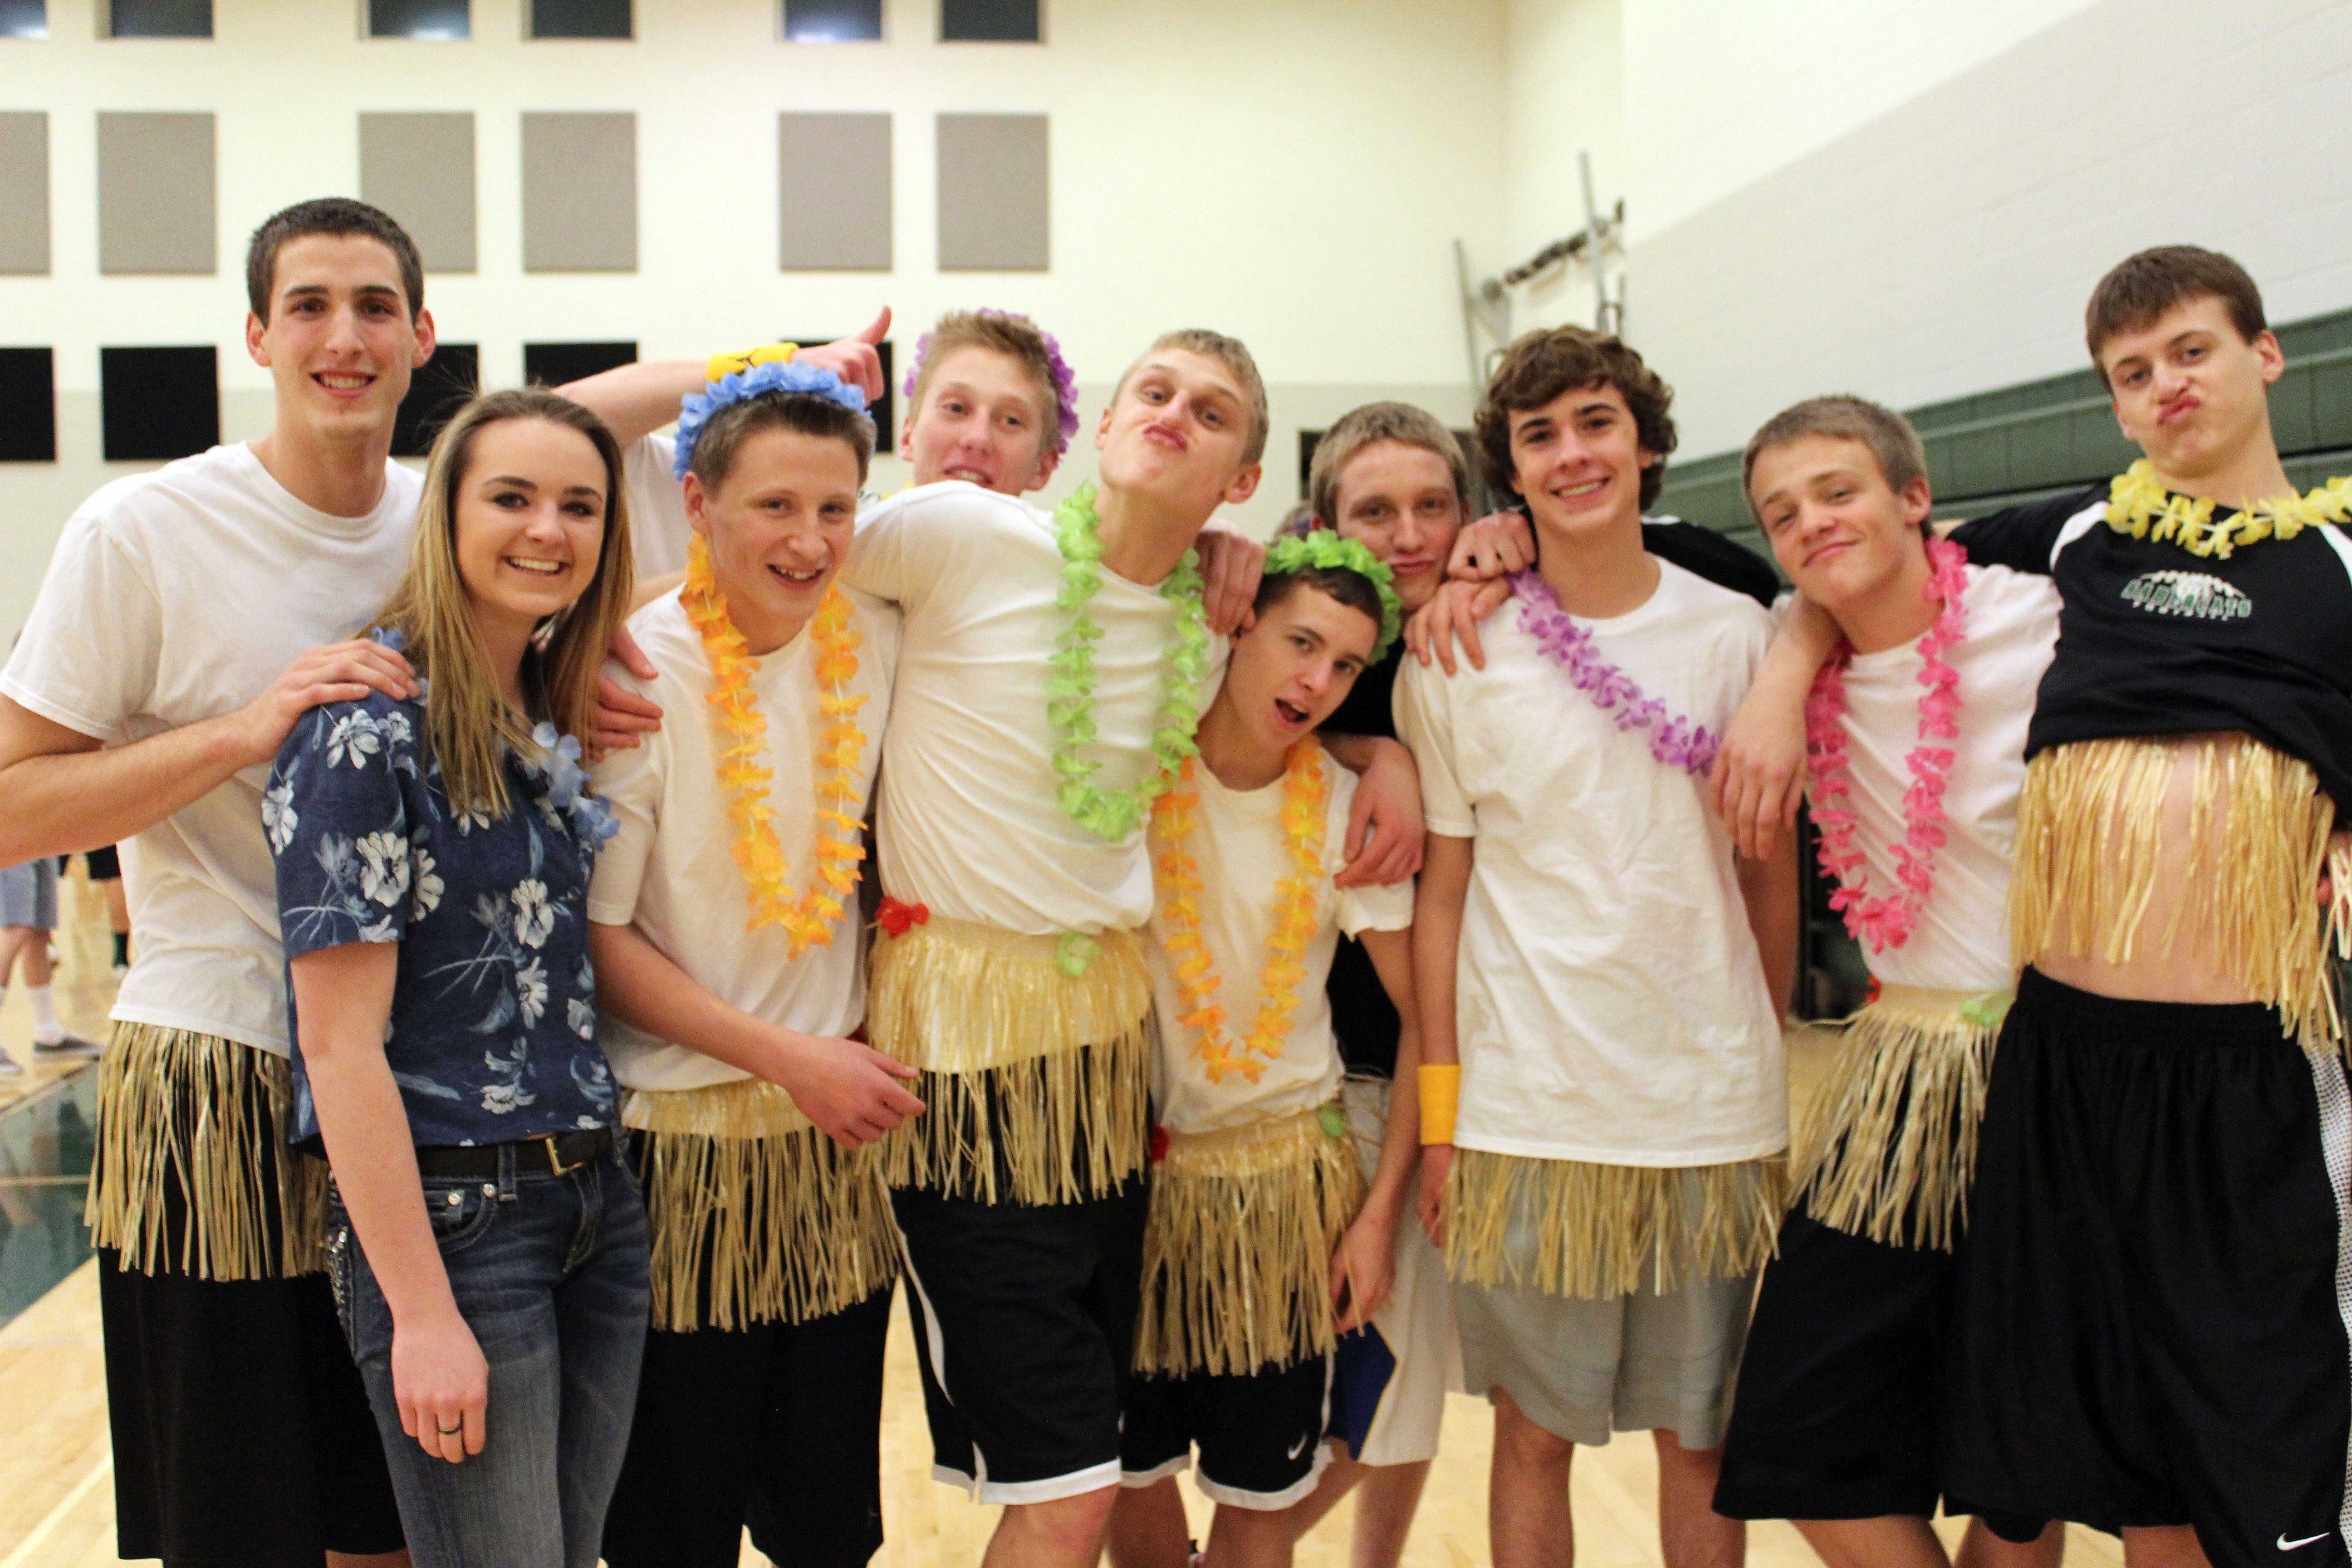 A team of juniors show off their hawaiian team spirit